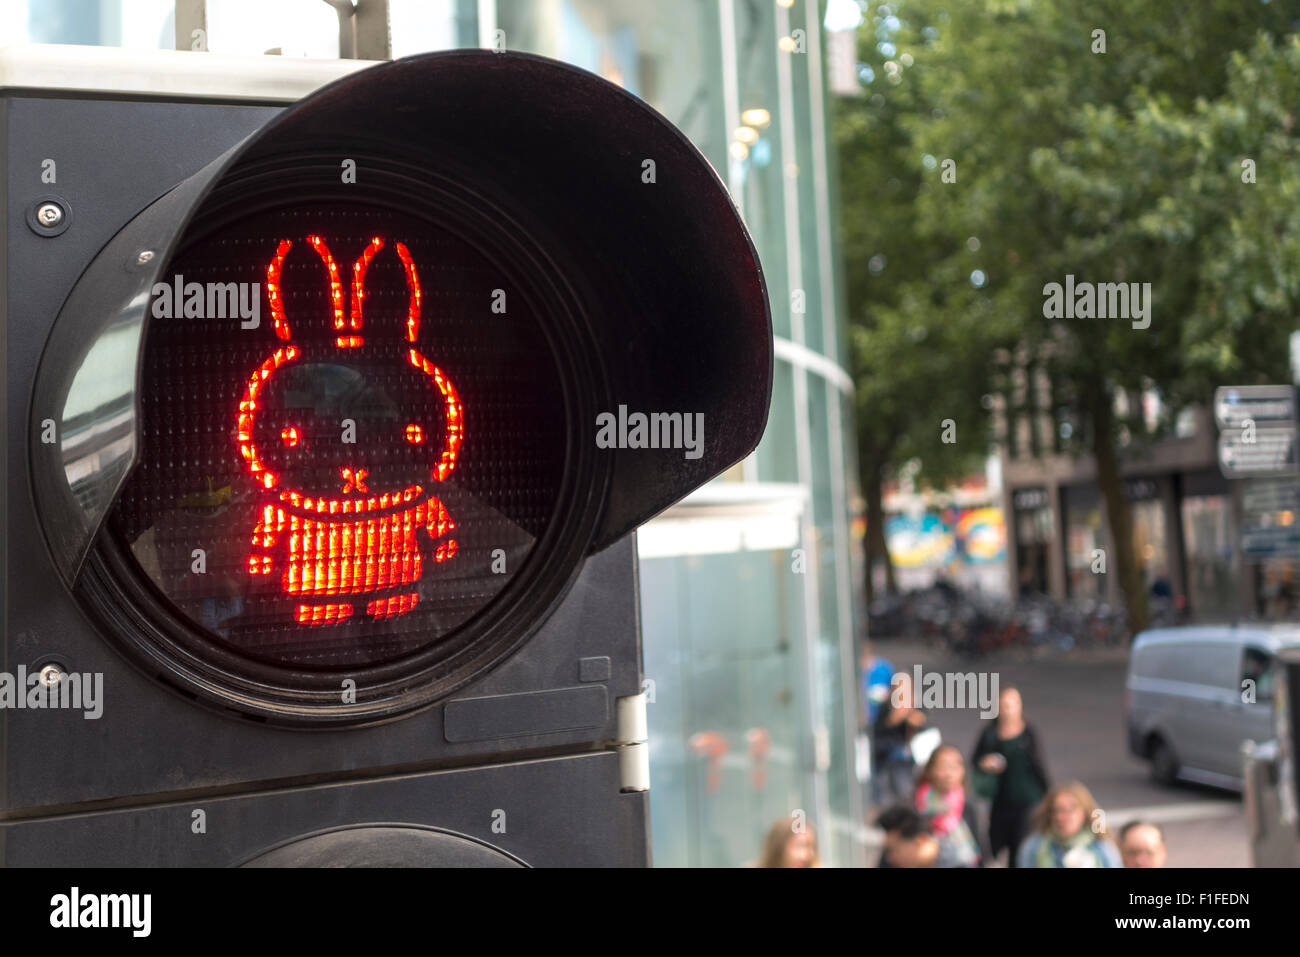 Utrecht publicado sobre Miffy paso de peatones con semáforos. Foto de stock